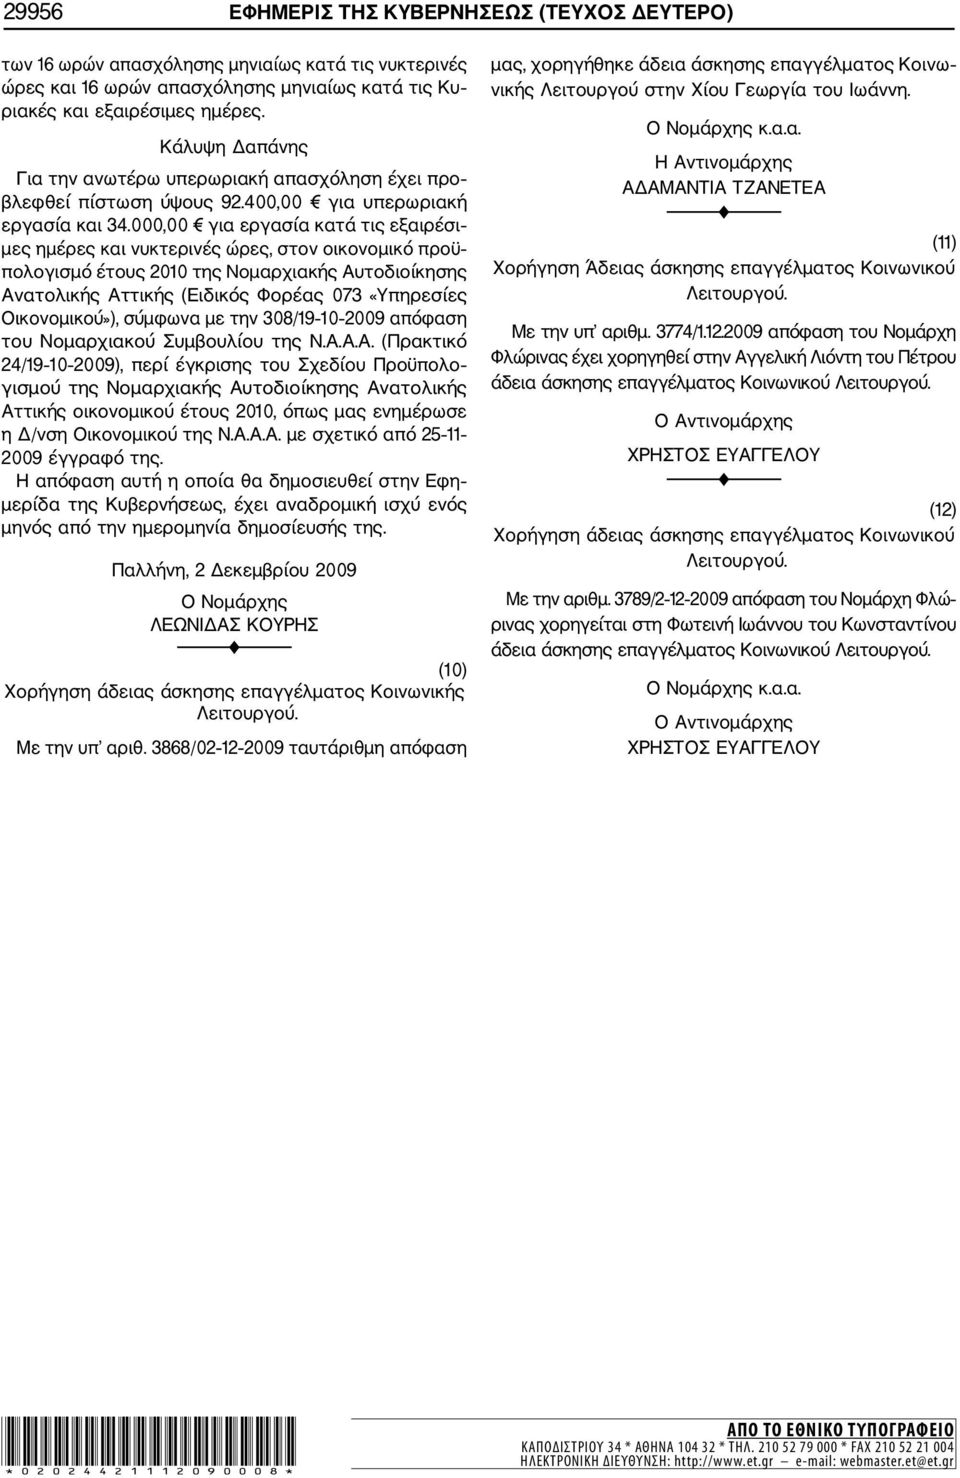 000,00 για εργασία κατά τις εξαιρέσι μες ημέρες και νυκτερινές ώρες, στον οικονομικό προϋ πολογισμό έτους 2010 της Νομαρχιακής Αυτοδιοίκησης Ανατολικής Αττικής (Ειδικός Φορέας 073 «Υπηρεσίες